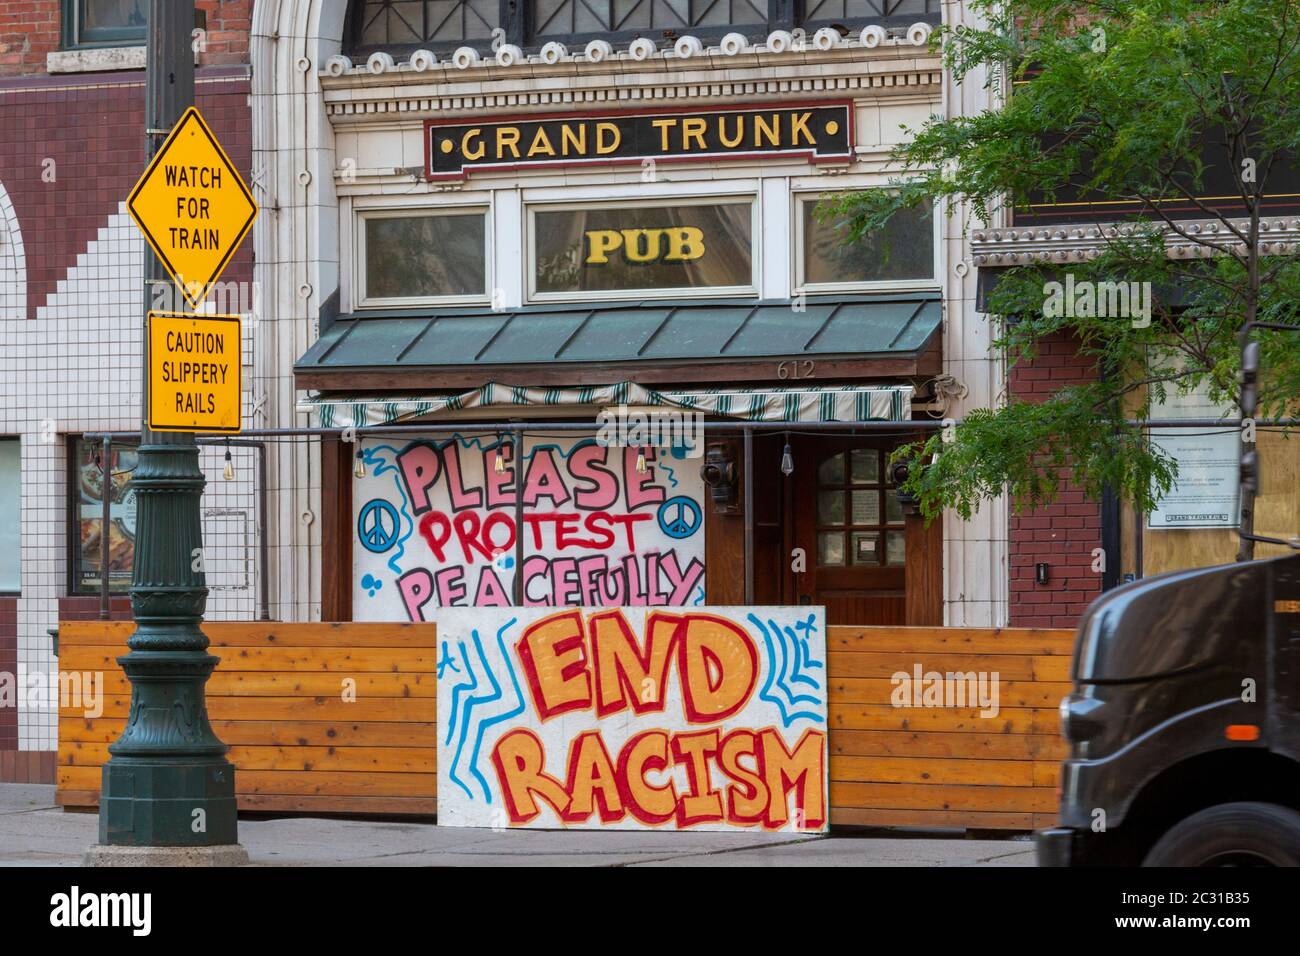 Detroit, Michigan - der Grand Trunk Pub, der wegen der Coronavirus-Pandemie geschlossen wurde, hat Zeichen gesetzt, die Proteste gegen Polizeibrutalität unterstützen. Stockfoto